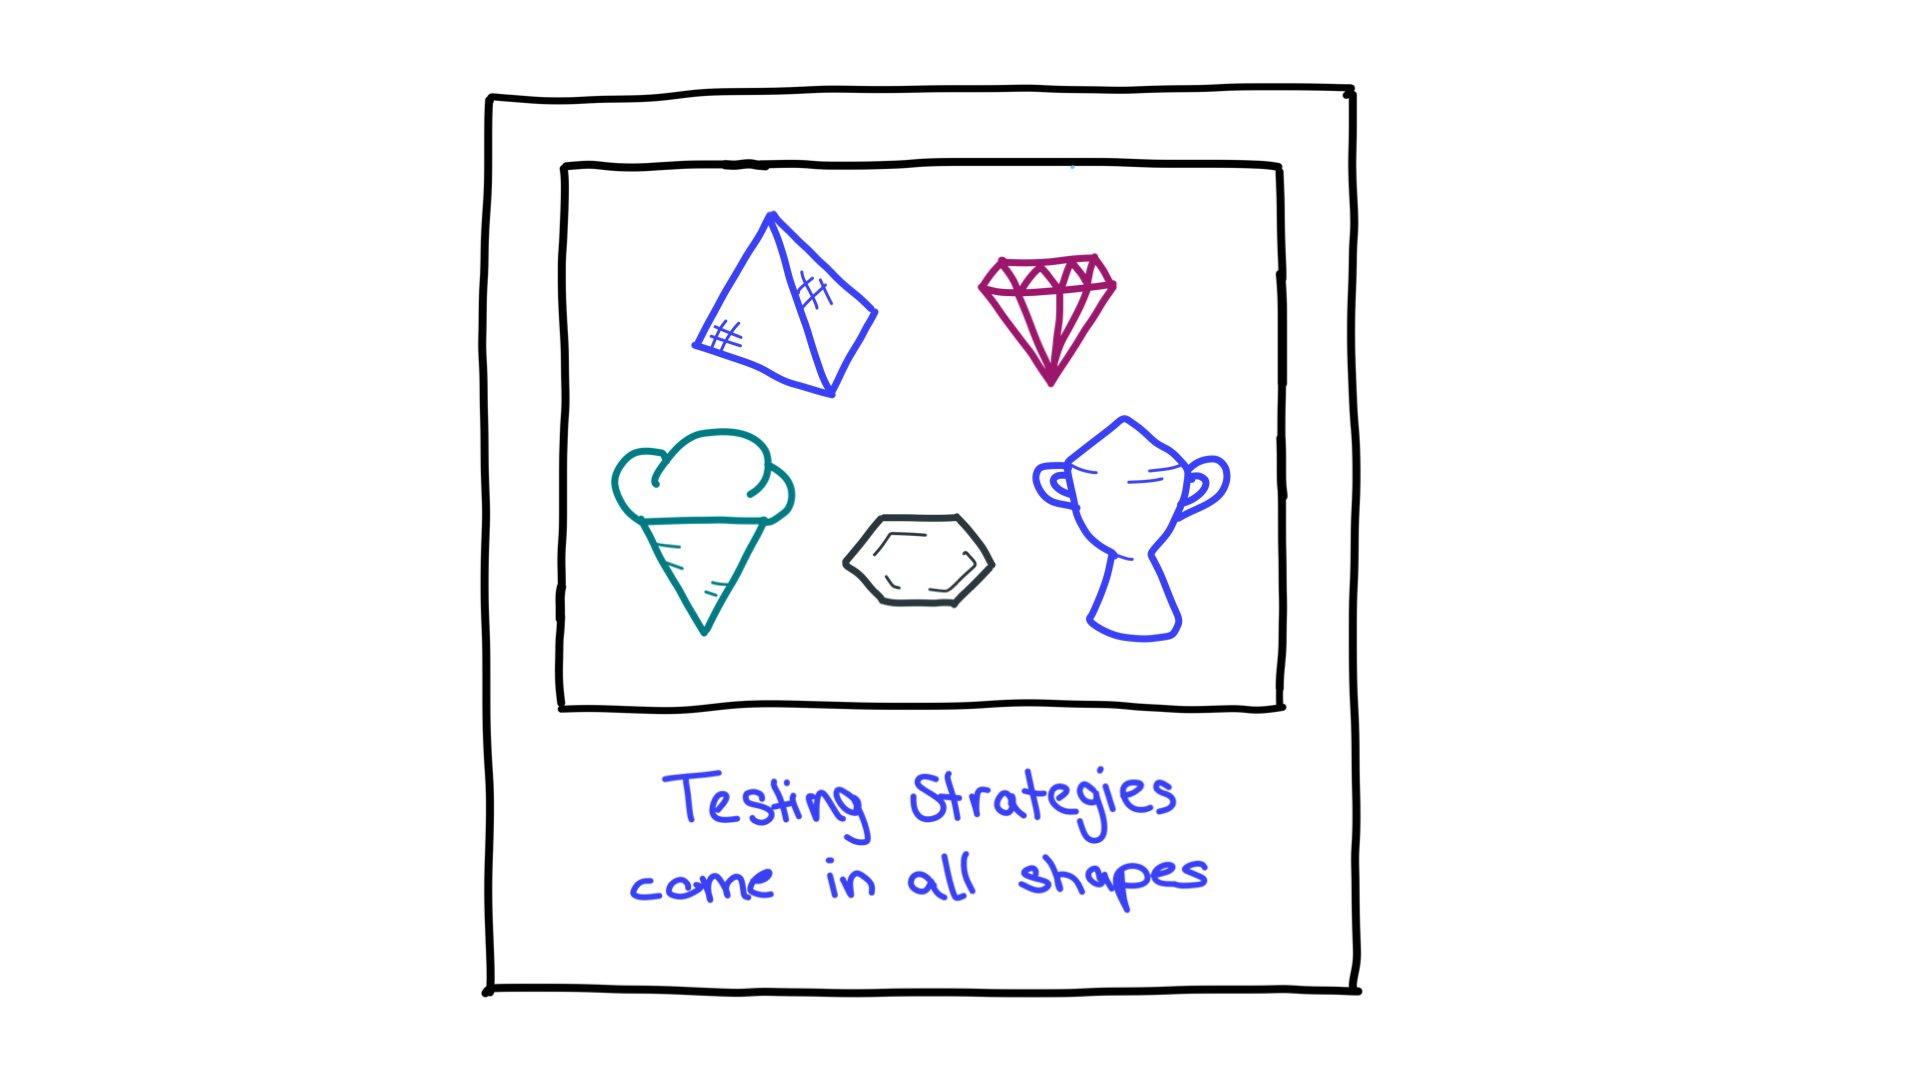 Voici quelques exemples de test de formes de stratégie: pyramide, diamant taille, cornet de glace, hexagone et trophée.